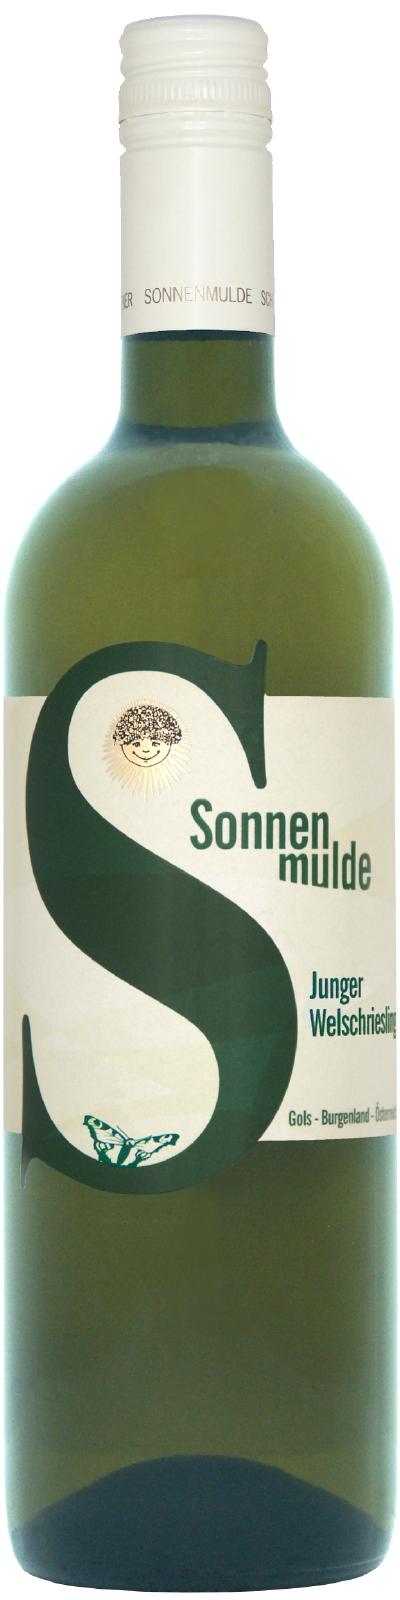 A bottle of Junger Welschriesling